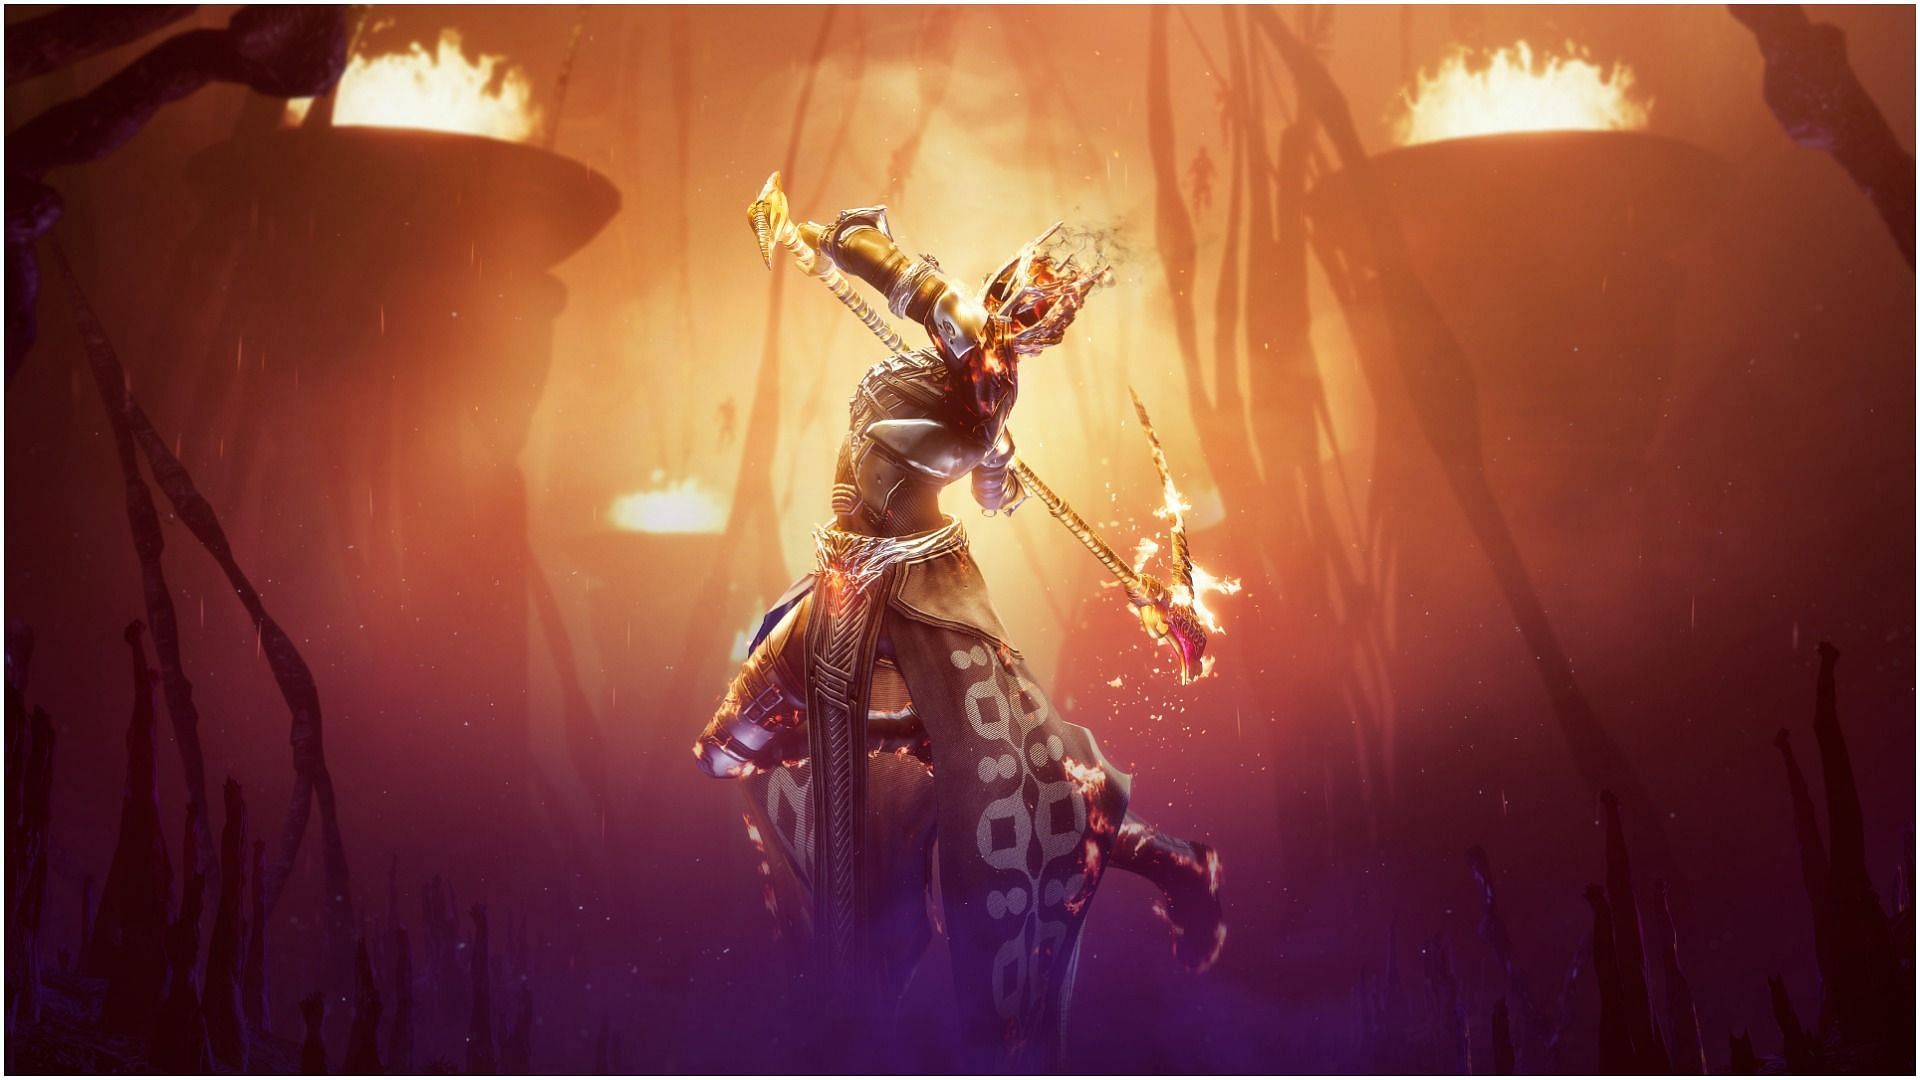 Warlock with a scythe (Image via Destiny 2)